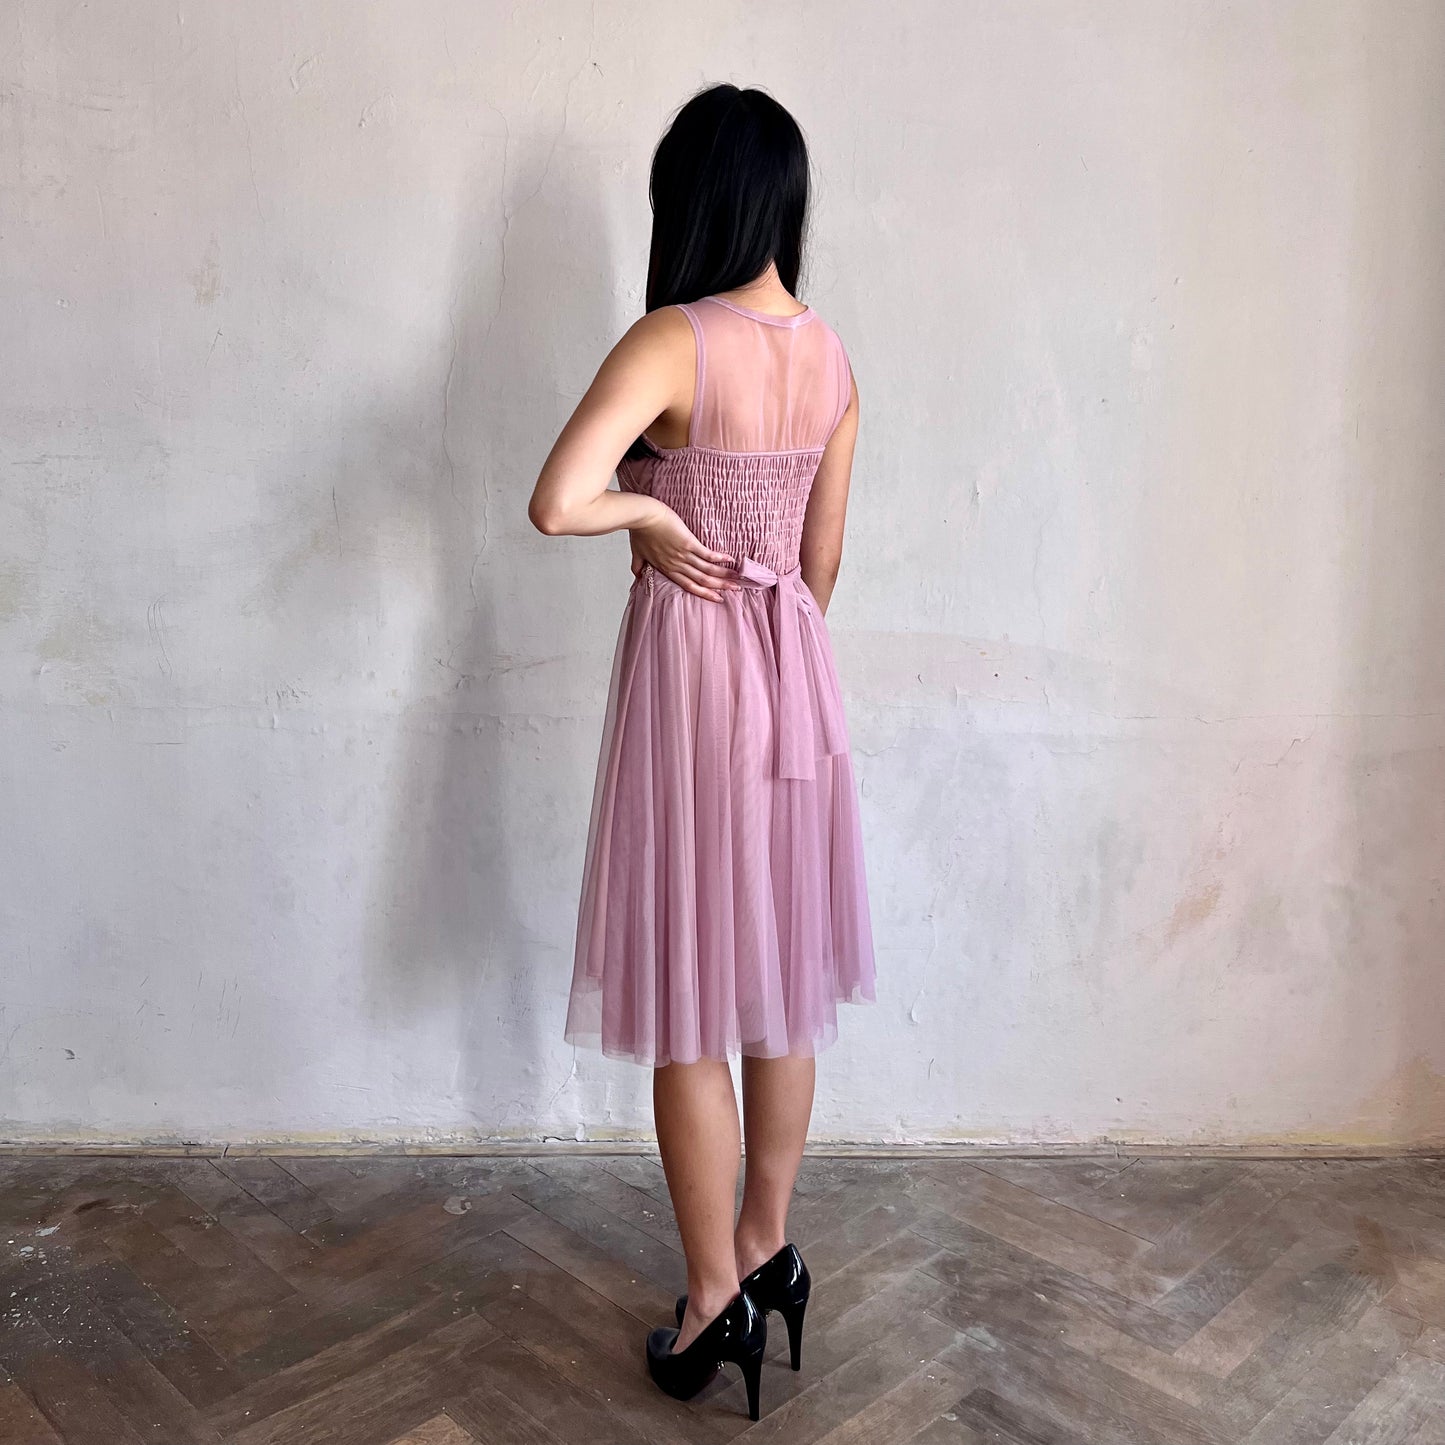 Modelka asijského původu pózující z boku oblečená ve krátkých krajkovaných růžových společenských šatech